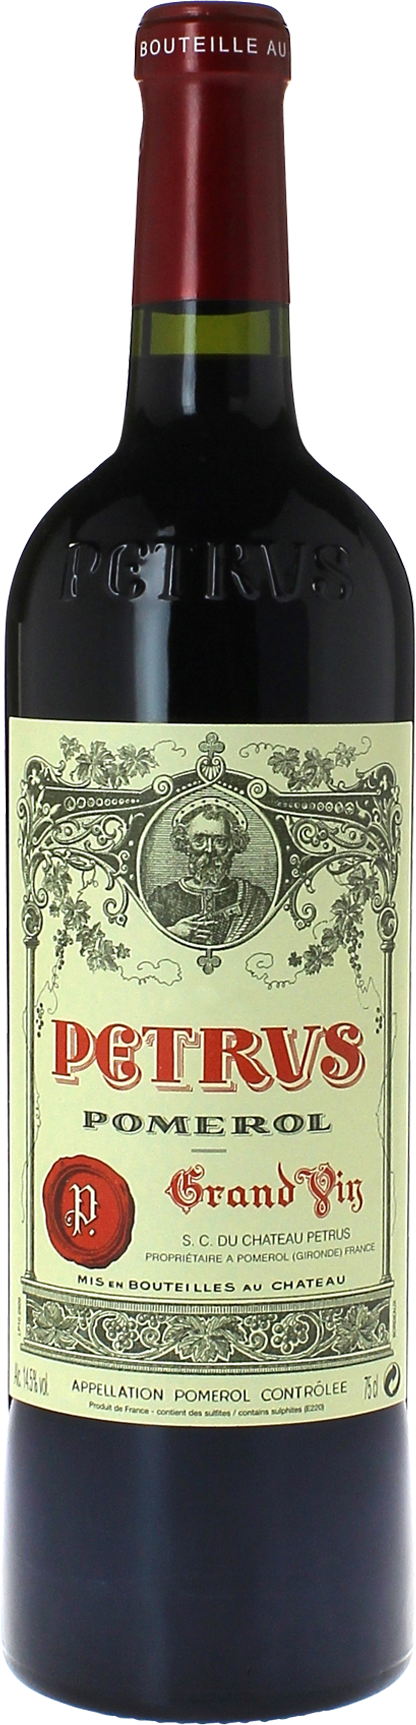 Petrus 1994